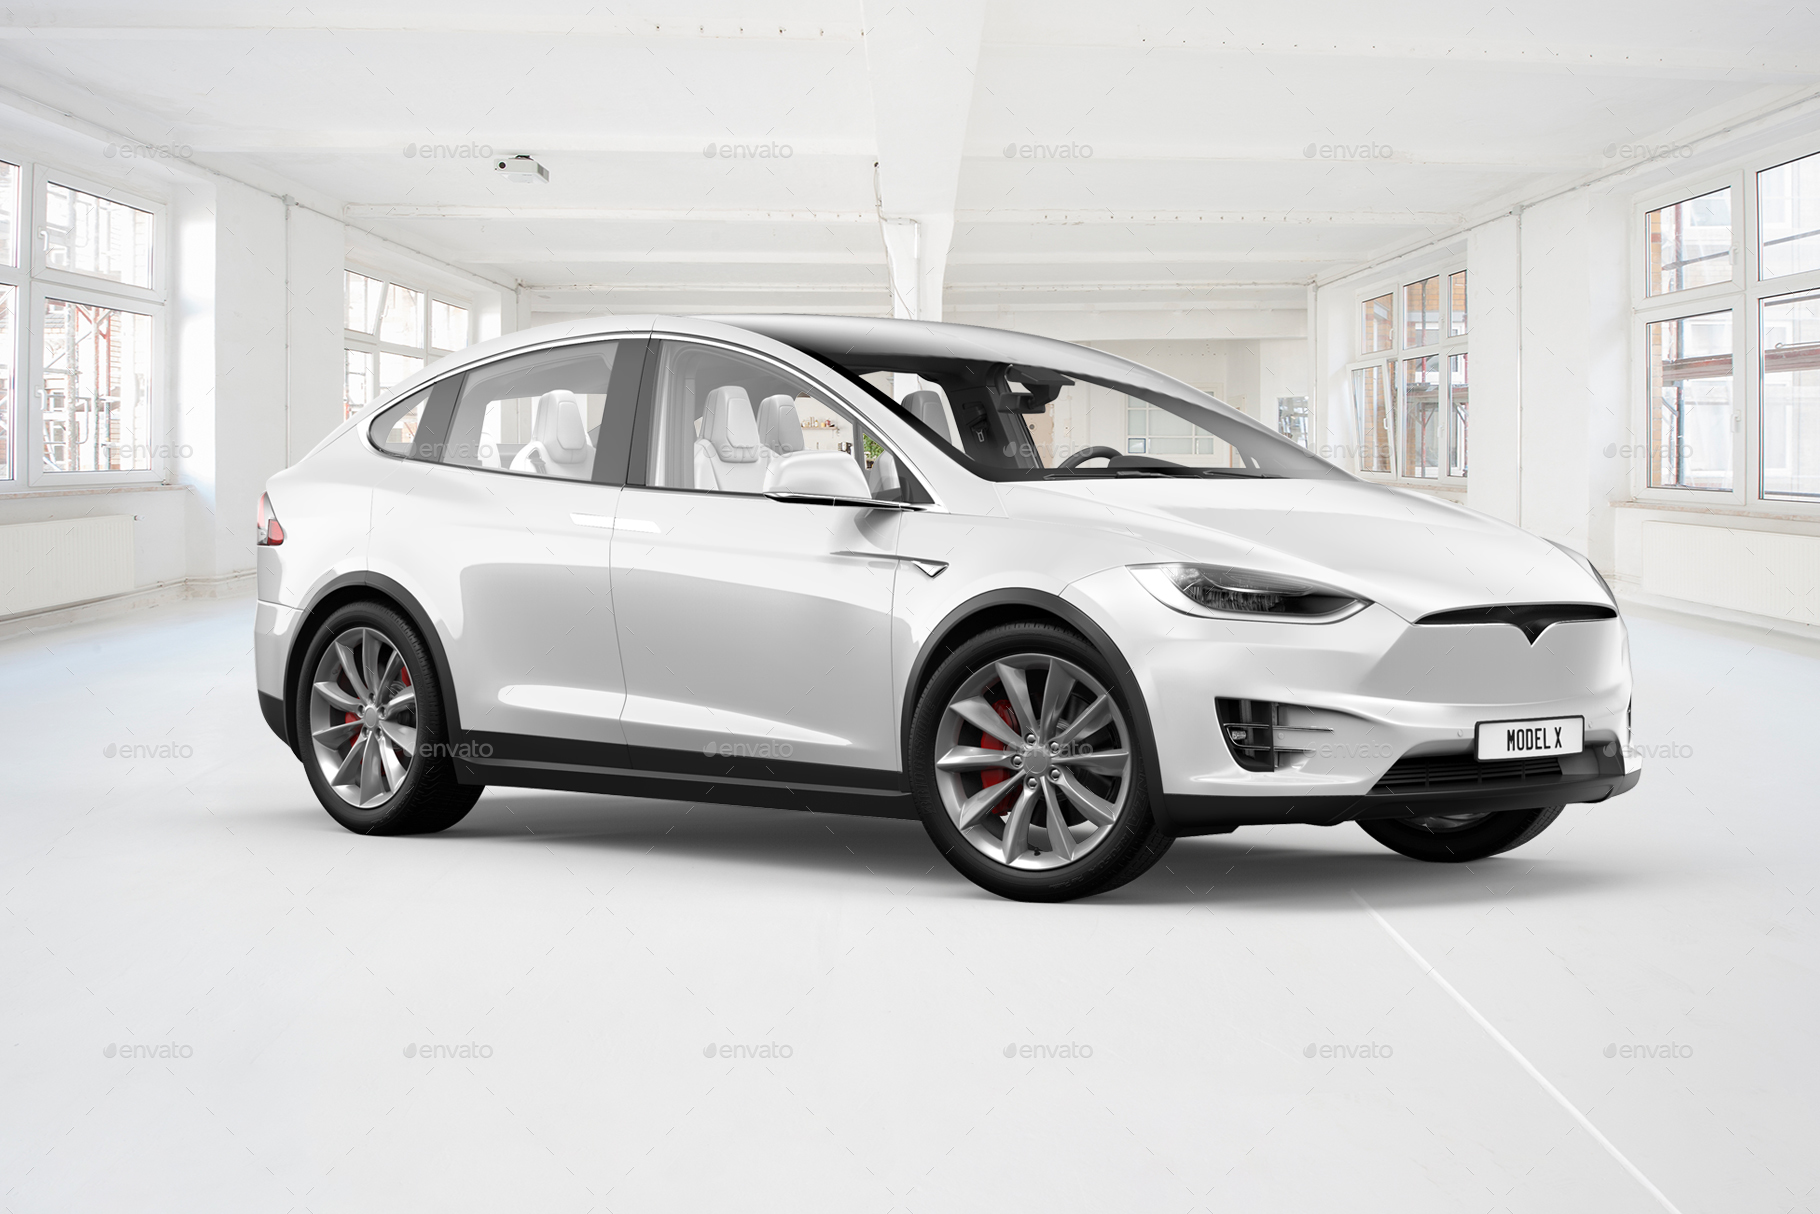 特斯拉汽车多角度场景展示样机贴图PSD模版 Tesla Mo